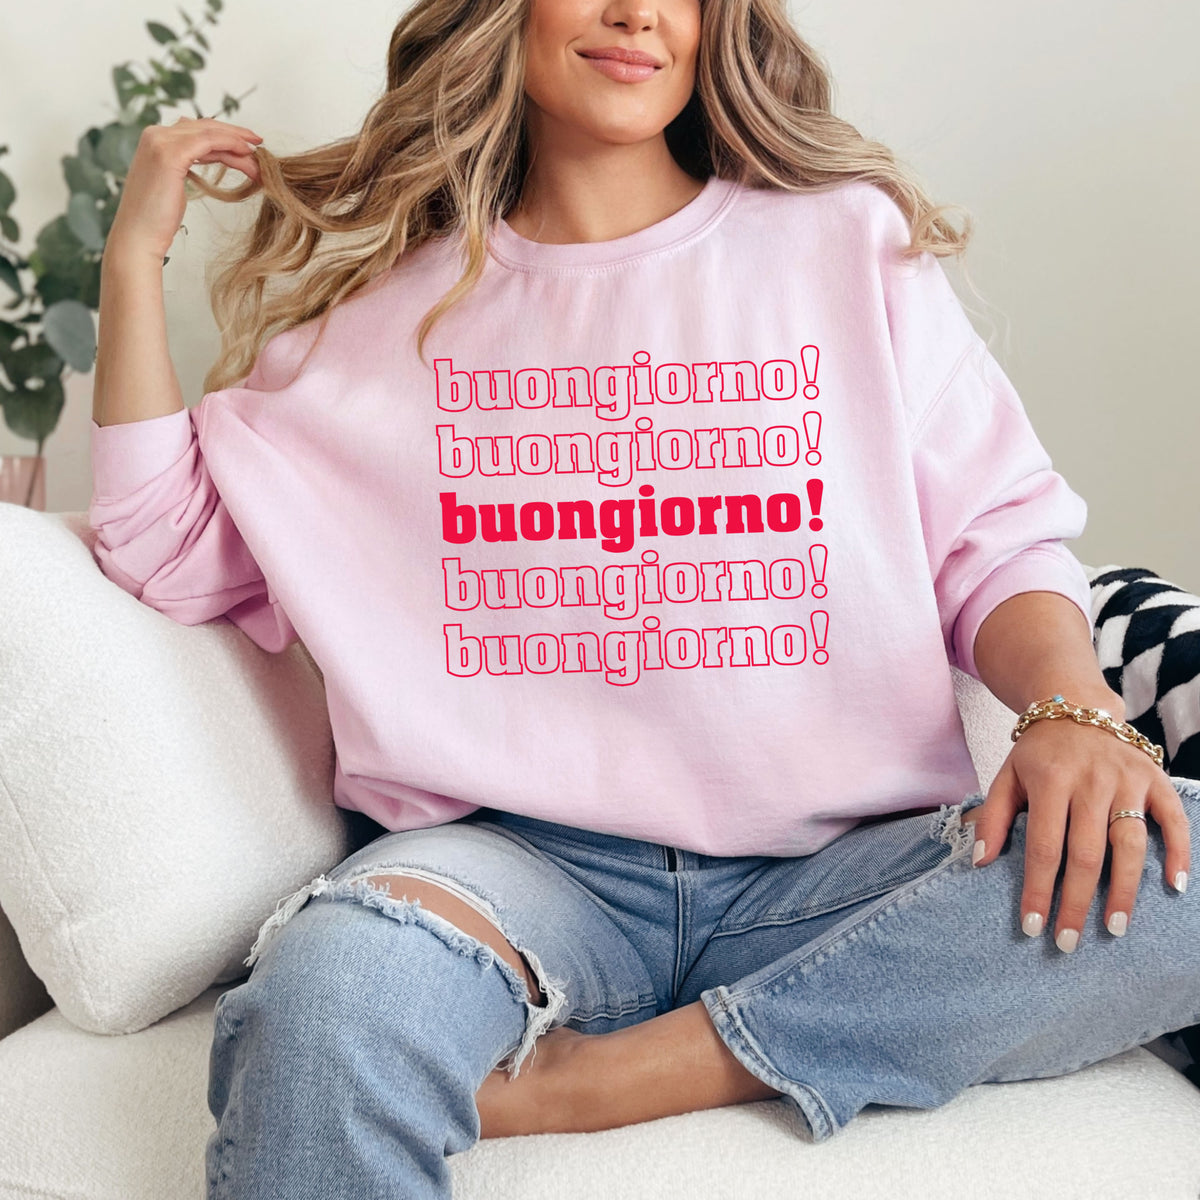 Buongiorno Good Morning Italian Phrase Shirt  | Light Pink Crewneck Sweatshirt